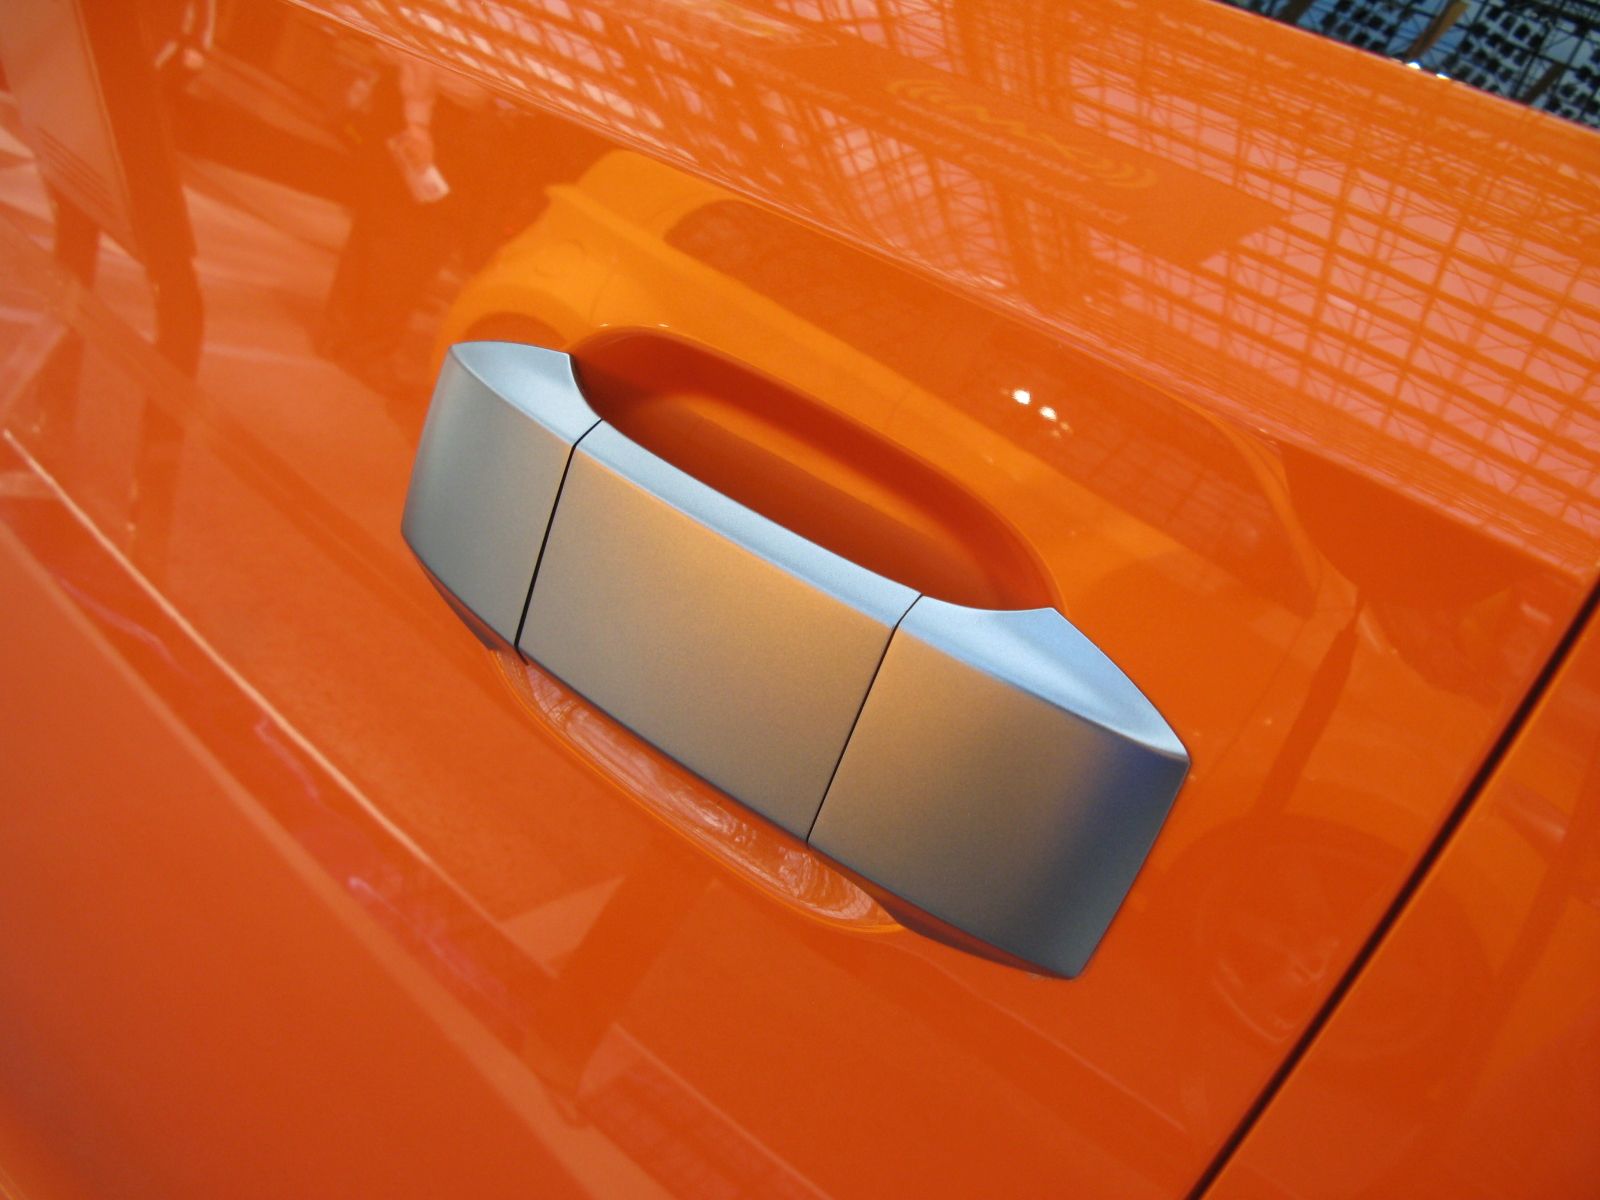 2008 Scion Hako Coupe Concept